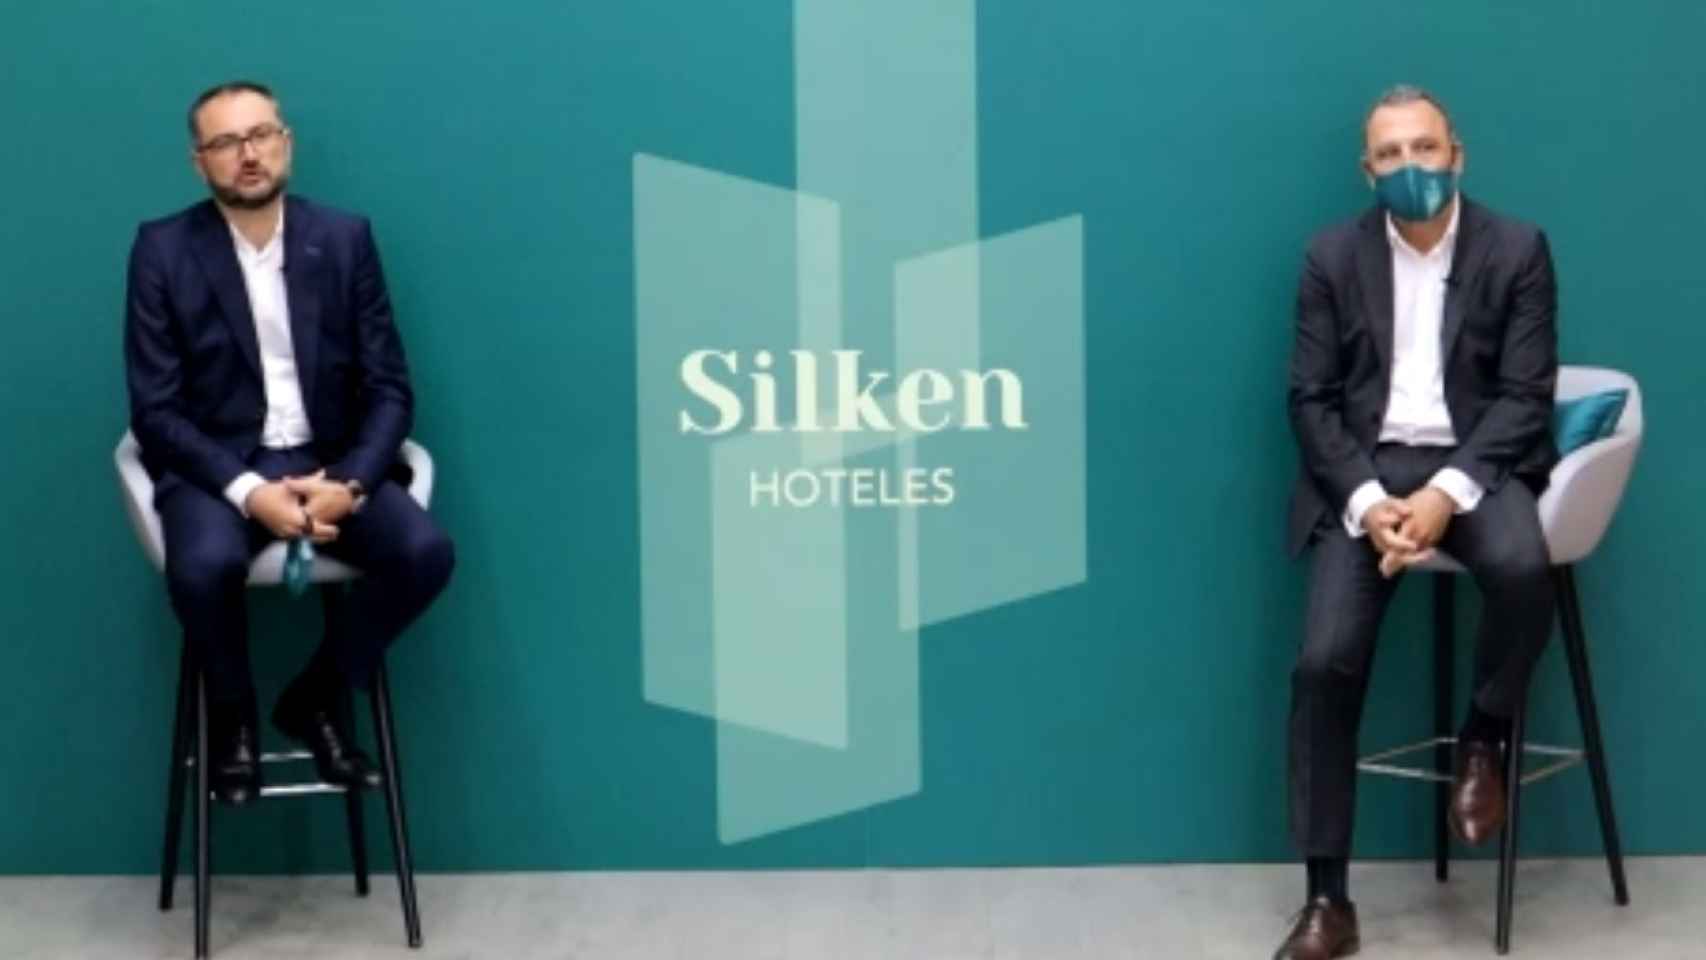 El director general de Silken Hoteles, Javier Villanueva, acompañado por el director de RRHH, calidad y comunicación, Amado Jiménez.